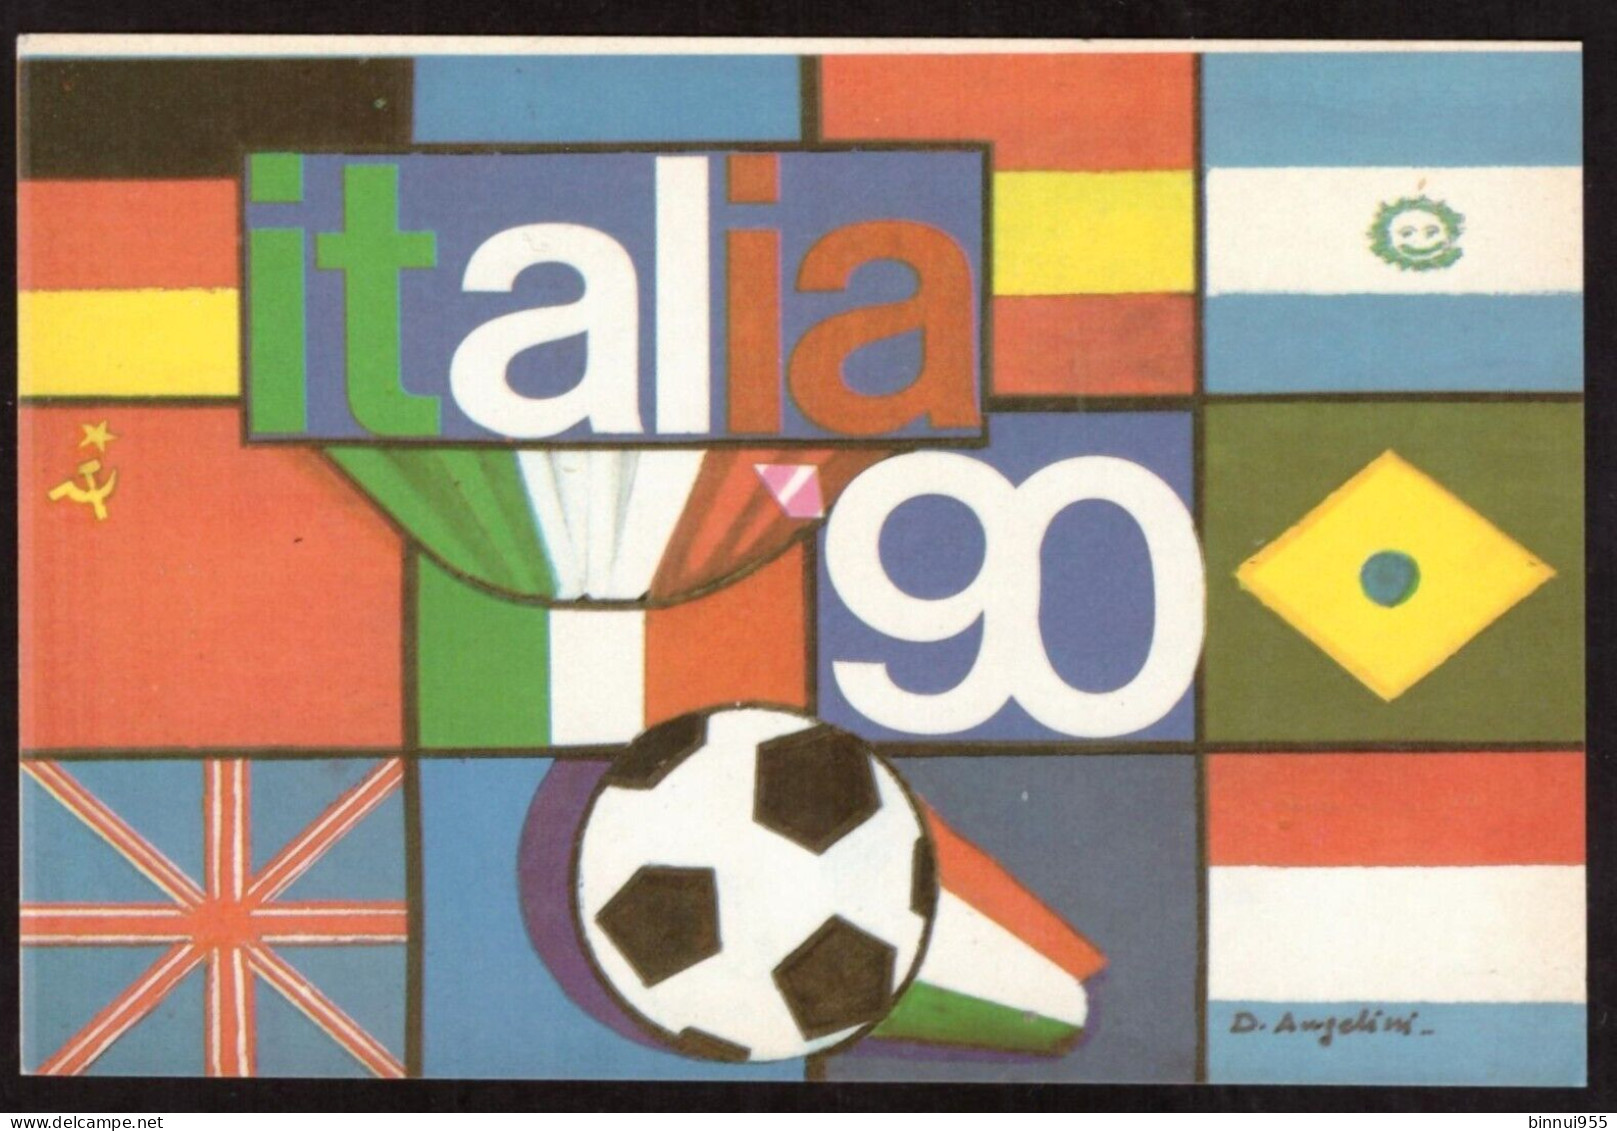 Cartolina Autoadesiva Italia 90 Campionati Di Calcio Non Viaggiata - Football